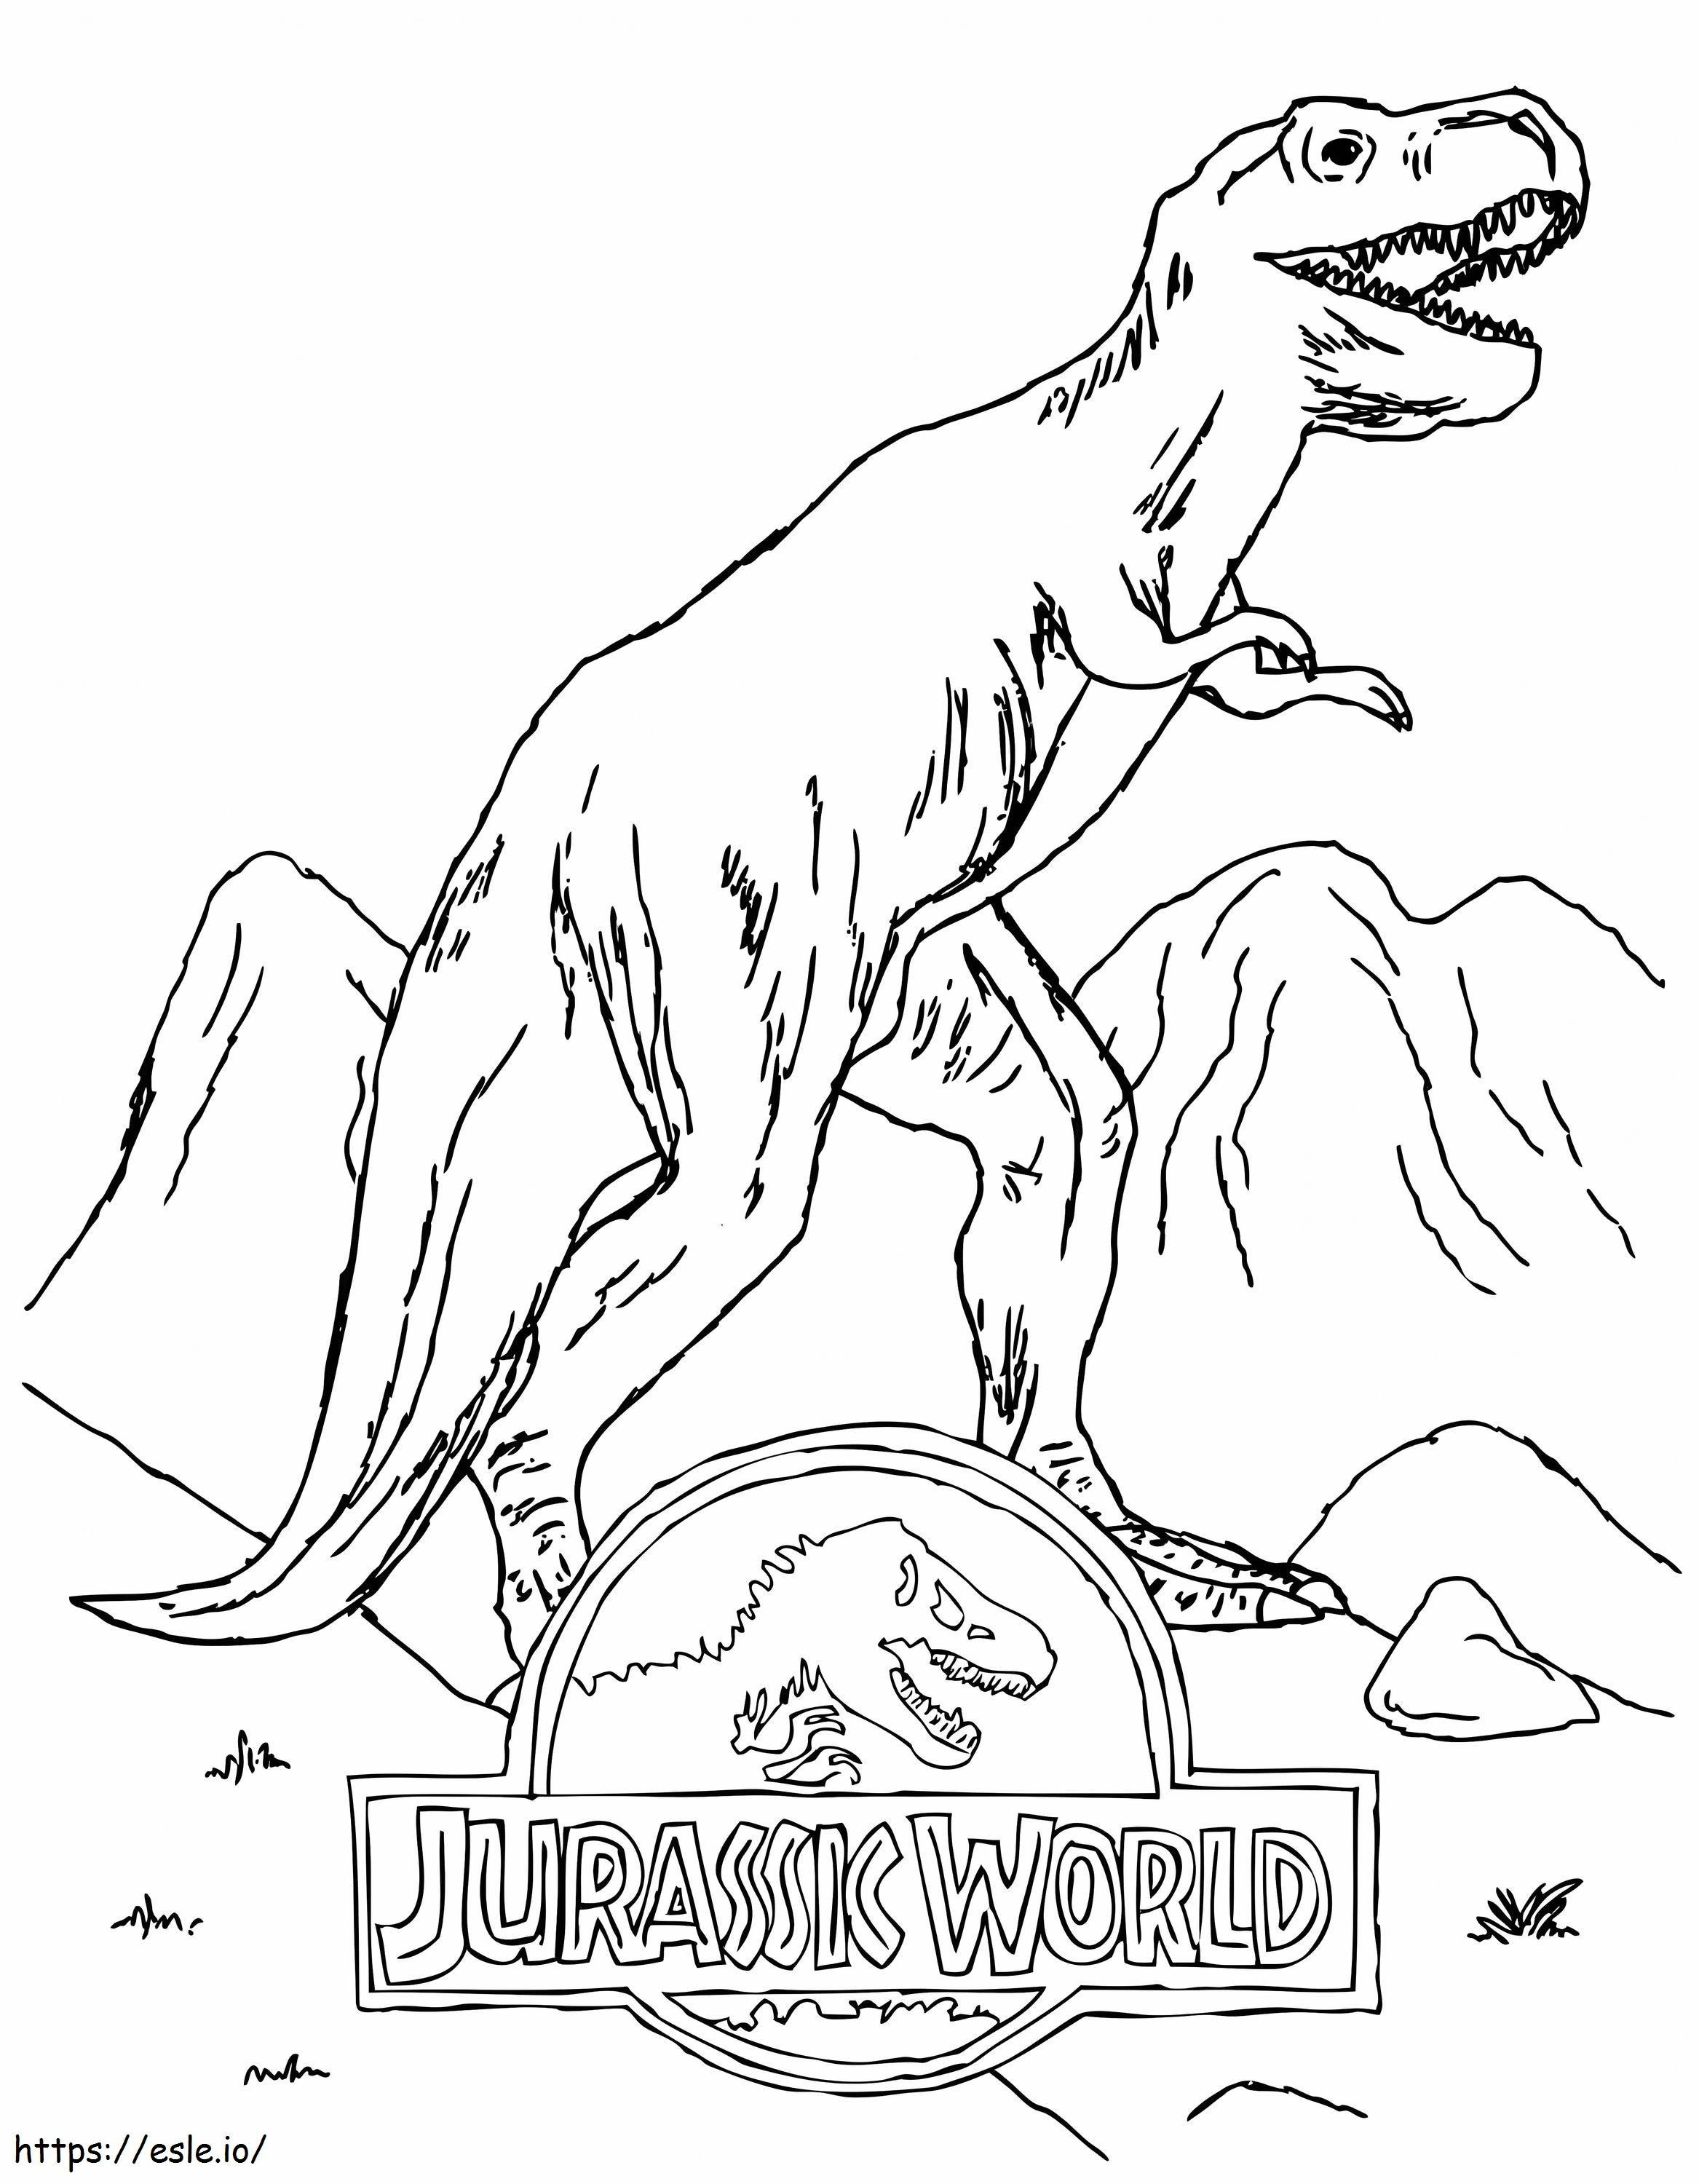 Coloriage Logo Jurassic World avec T Rex à imprimer dessin